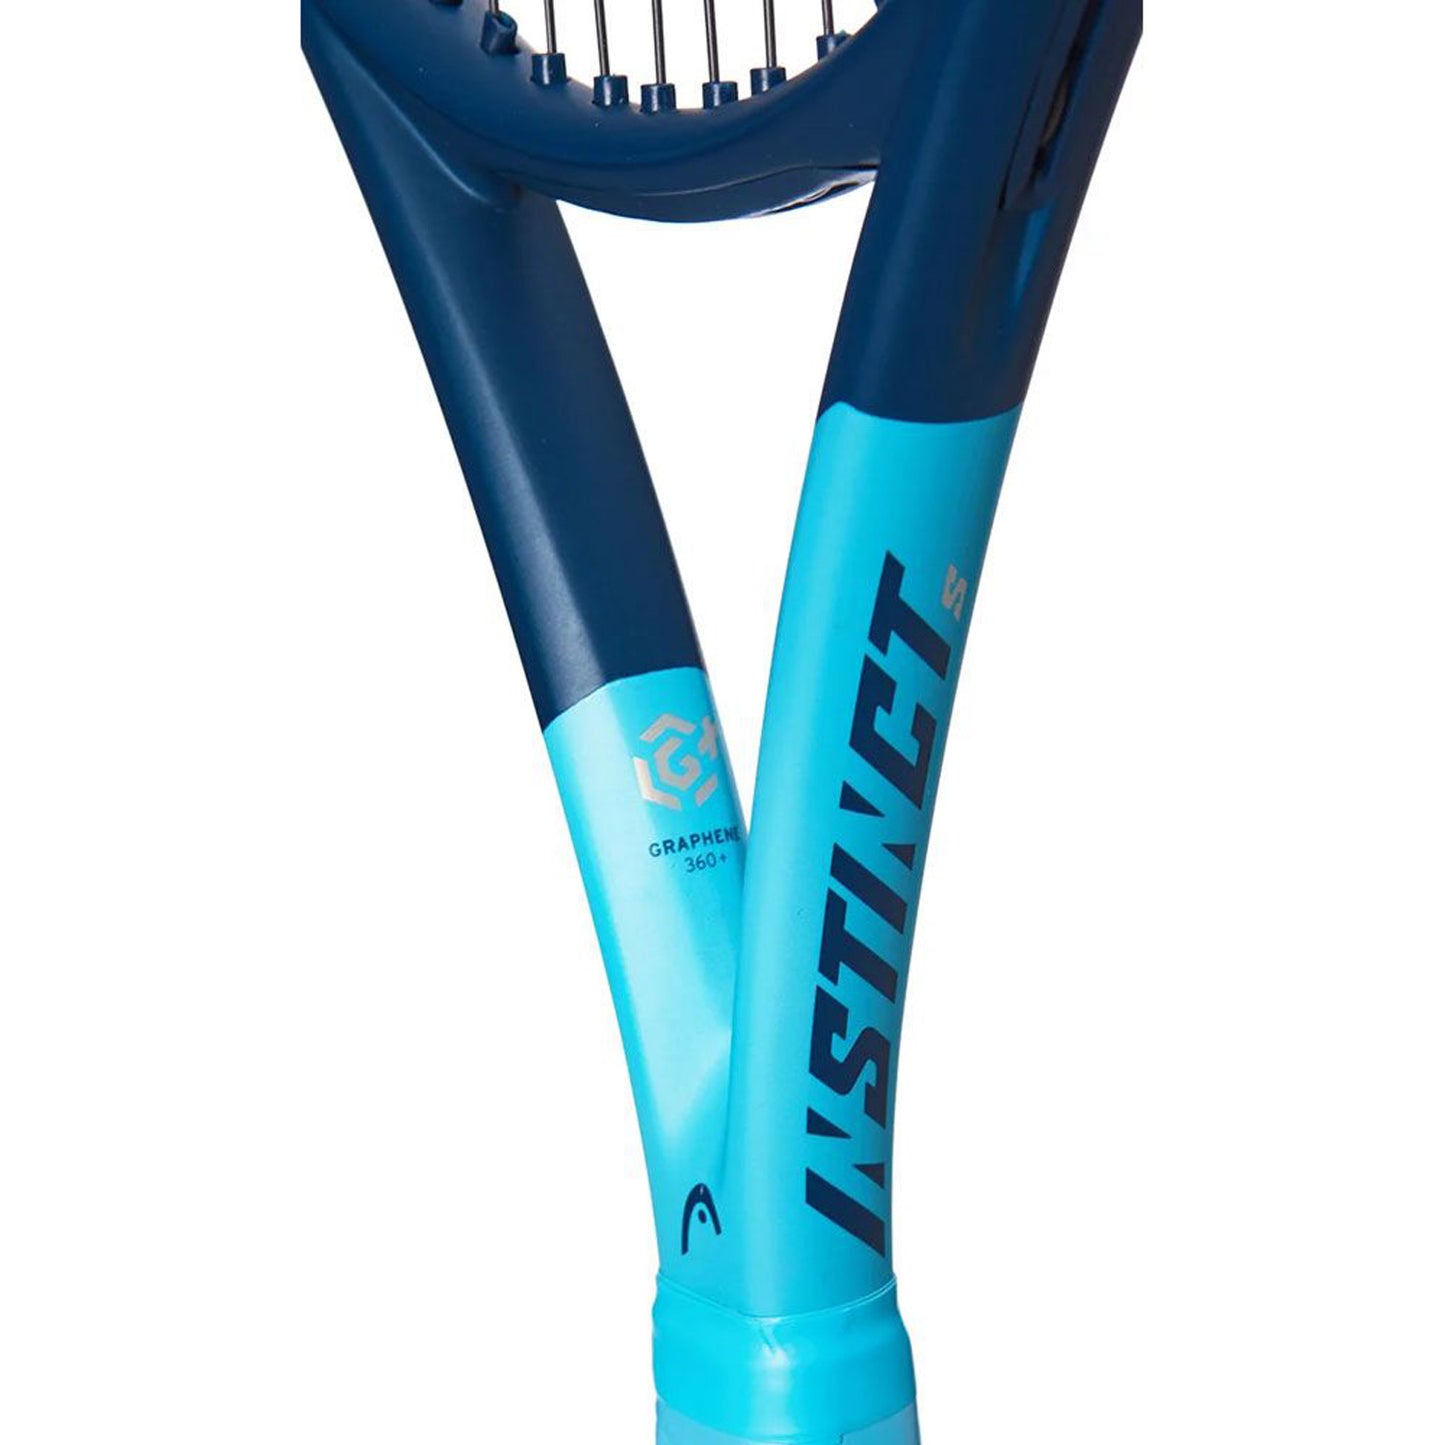 HEAD Graphene 360+Instinct S Unstrung Graphite Tennis Racquet - Best Price online Prokicksports.com